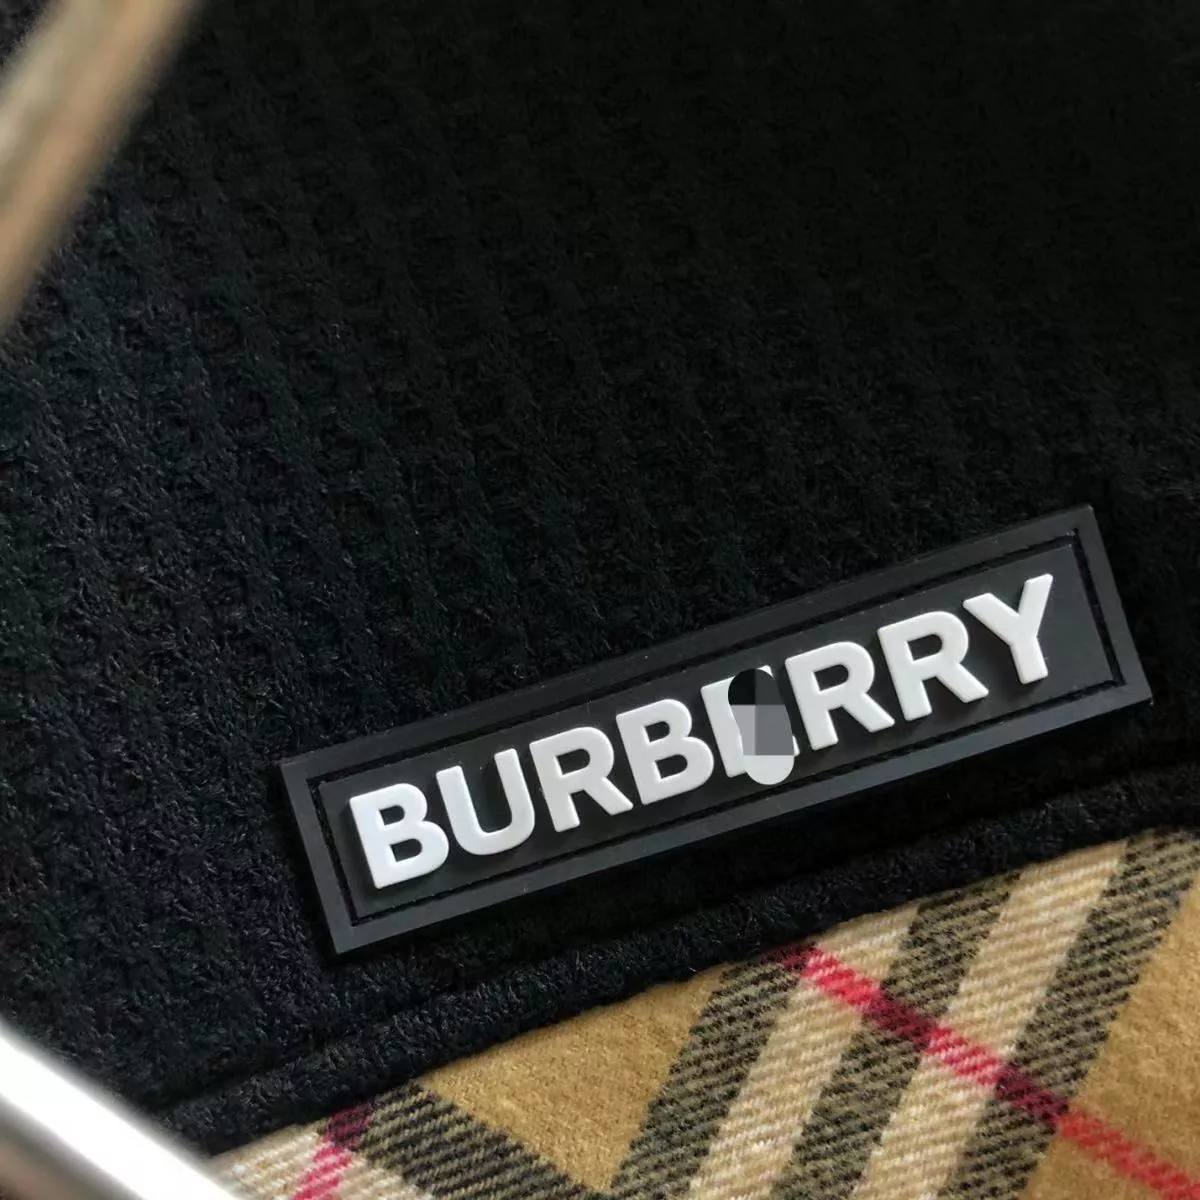 Burberry Men's Jacket